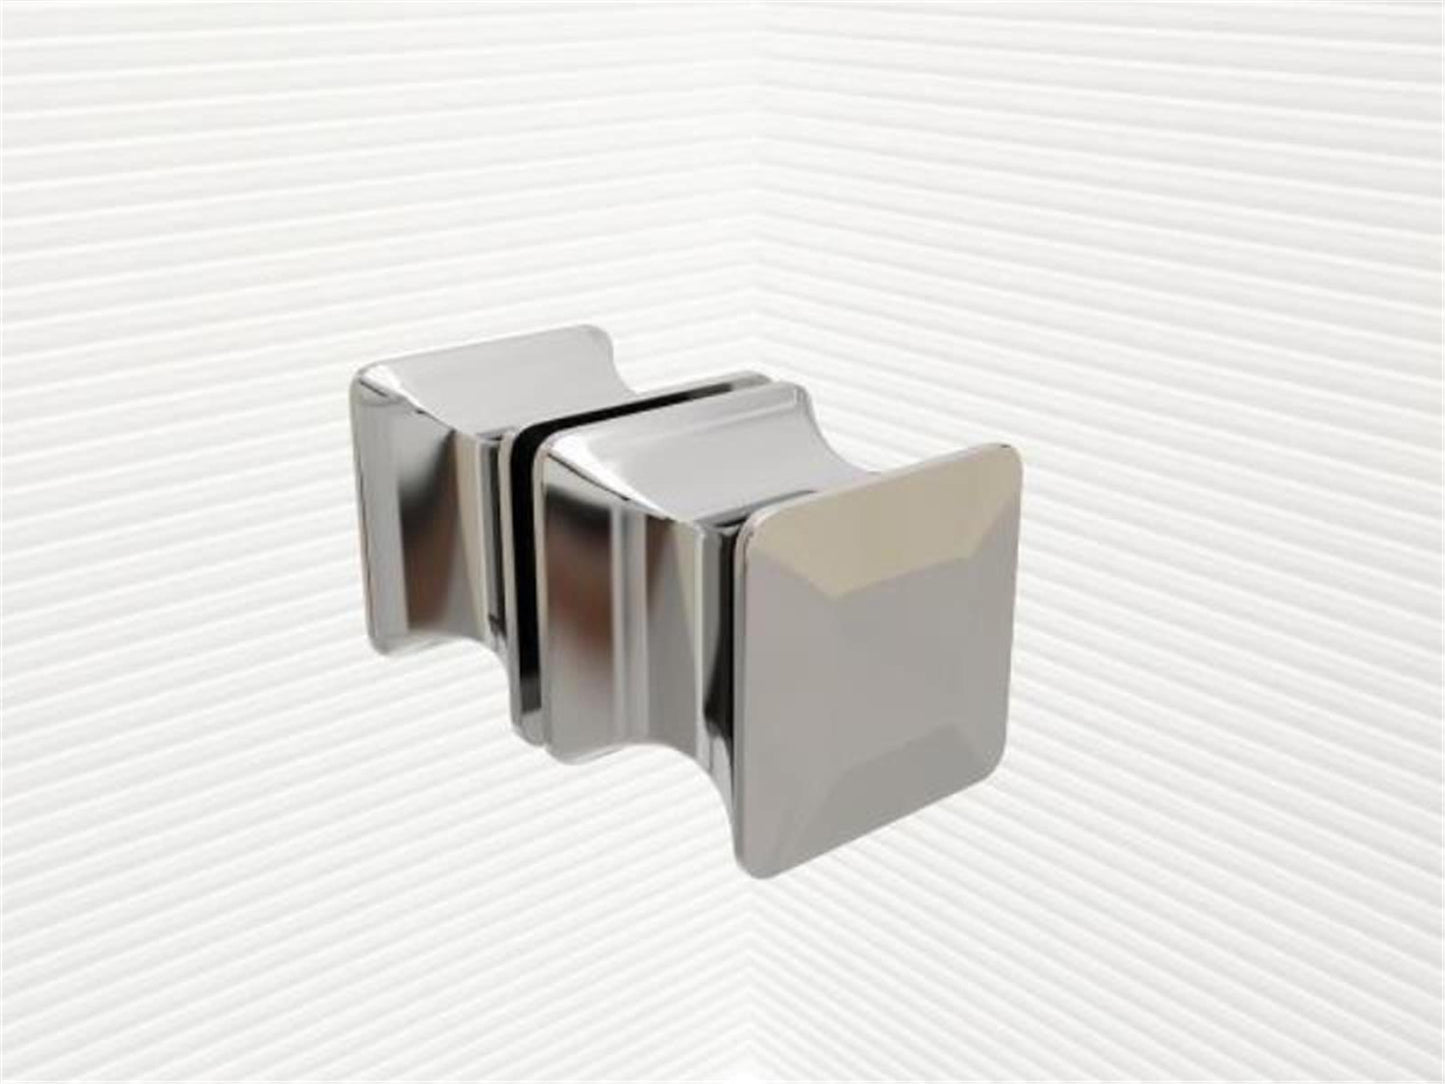 GlasHomeCenter - Cabine de douche en U "Asuka" (120x90x195cm) - 8mm - cabine de douche d'angle - cloison de douche - sans receveur de douche